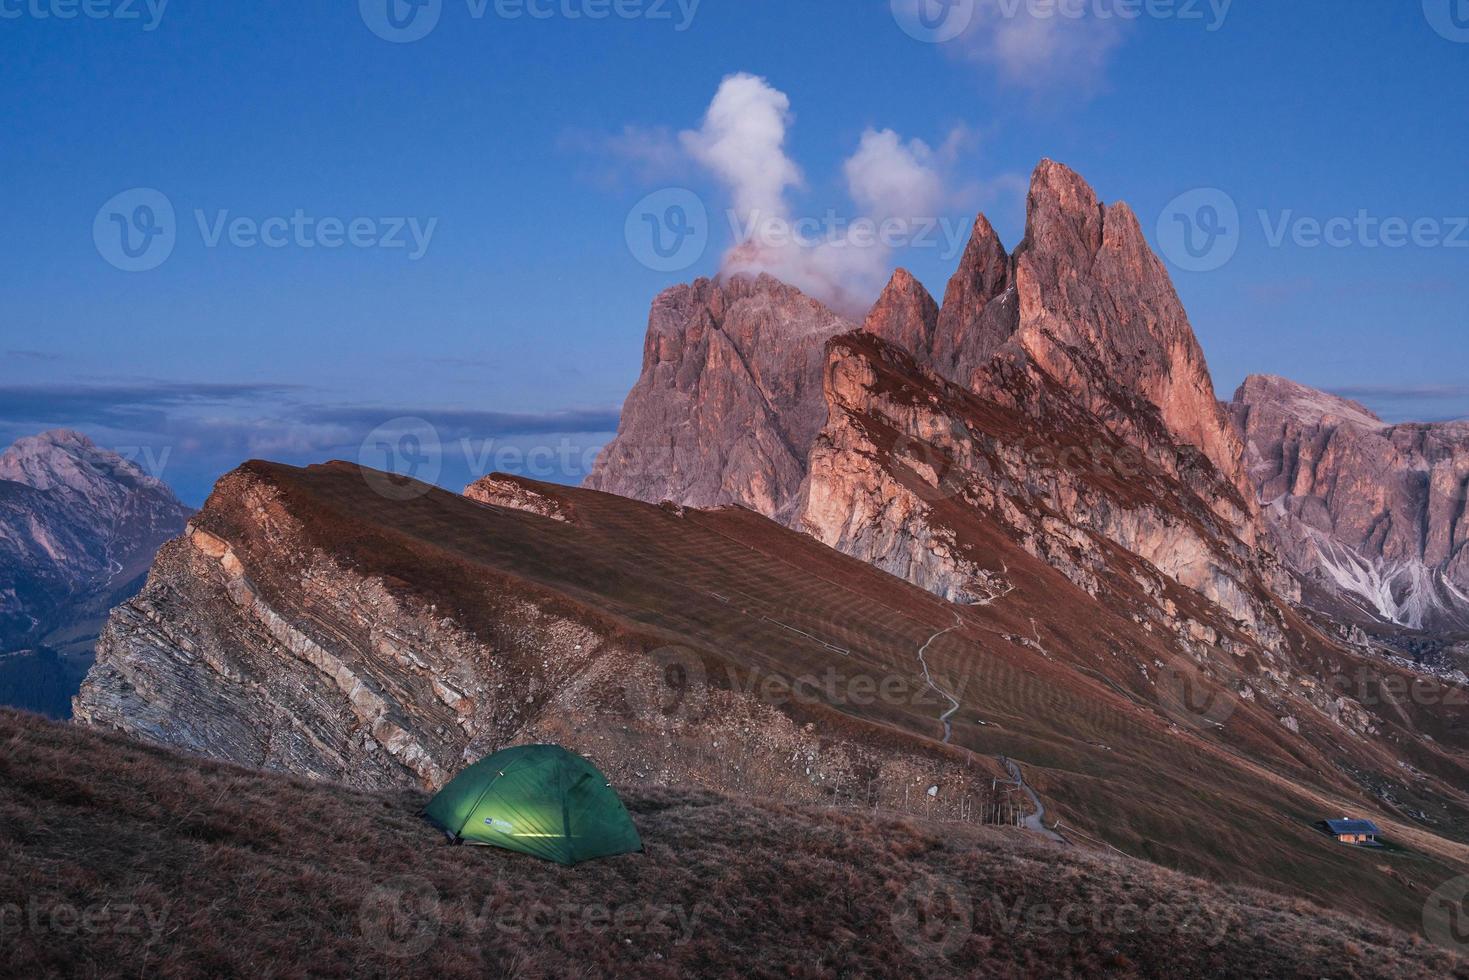 Abend und Nebel. grünes Zelt, das auf dem Hügel steht. Toller Ort in den Alpen von Seceda foto